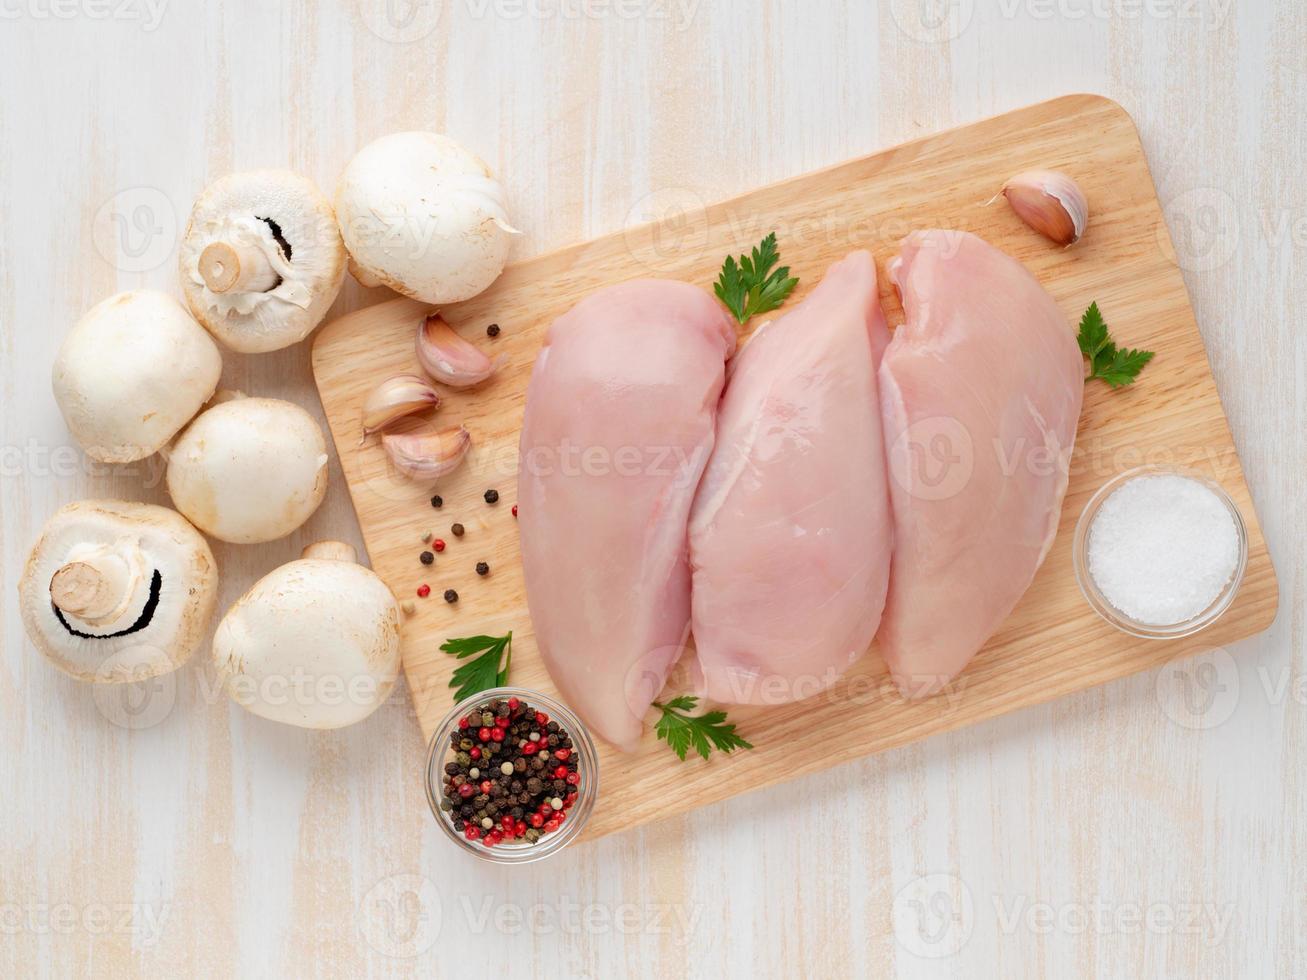 filé de peito de frango cru com especiarias na placa de madeira na mesa de madeira branca foto